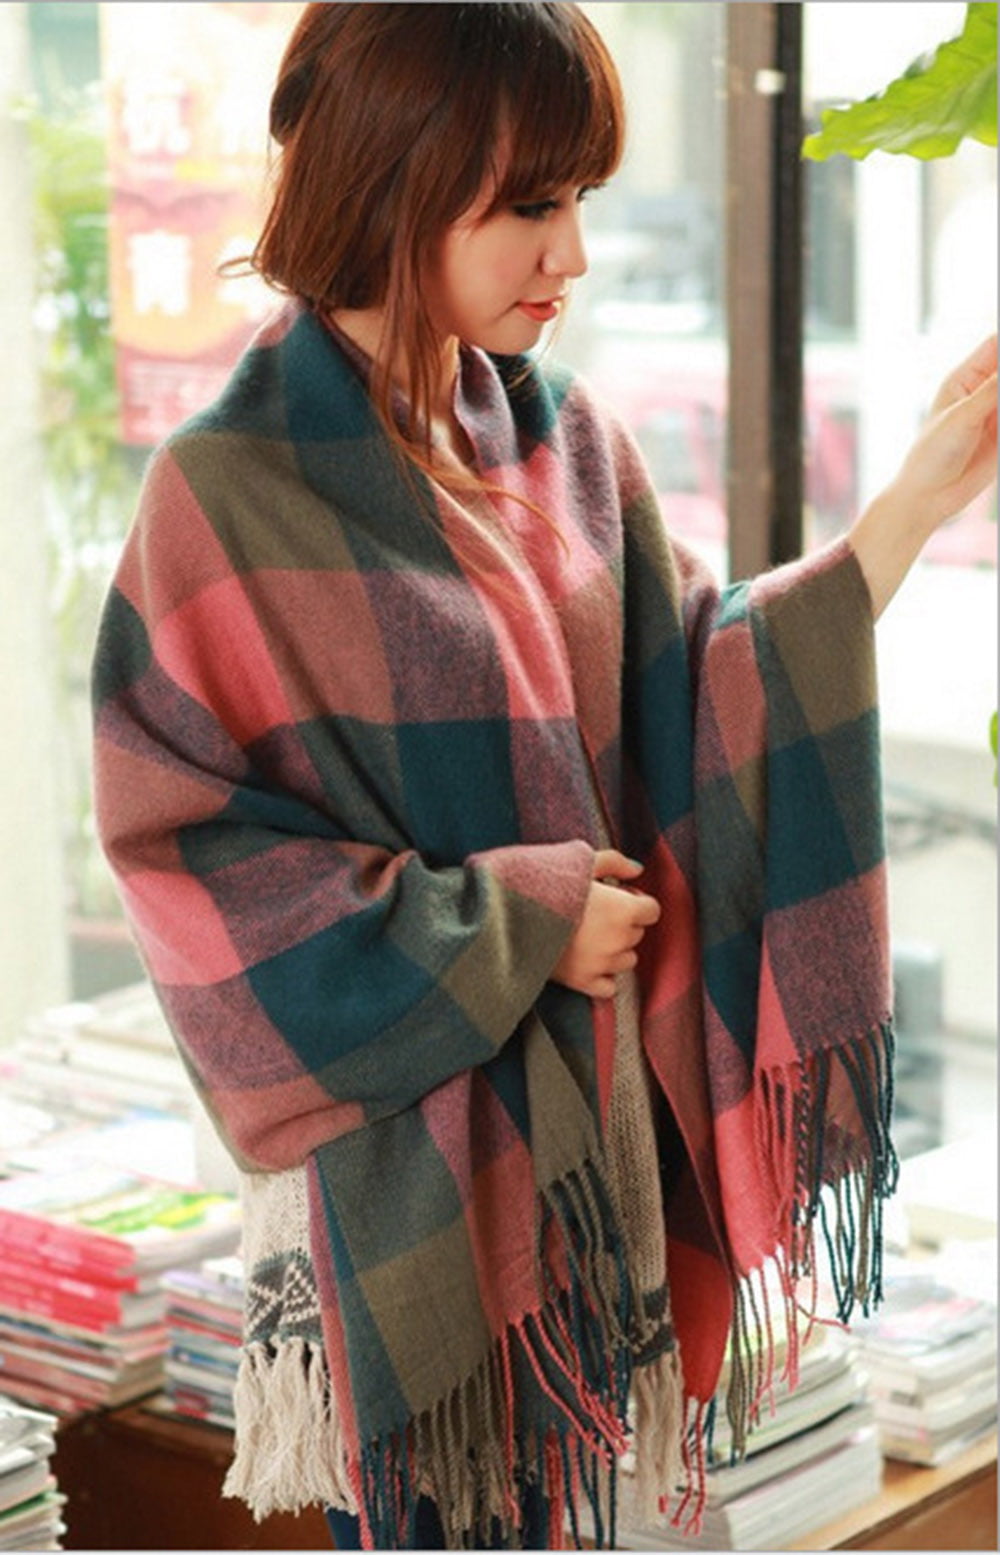 Women Scarf Fashion Long Plaid Shawls Wraps Big Grid Winter Warm Lattice Large